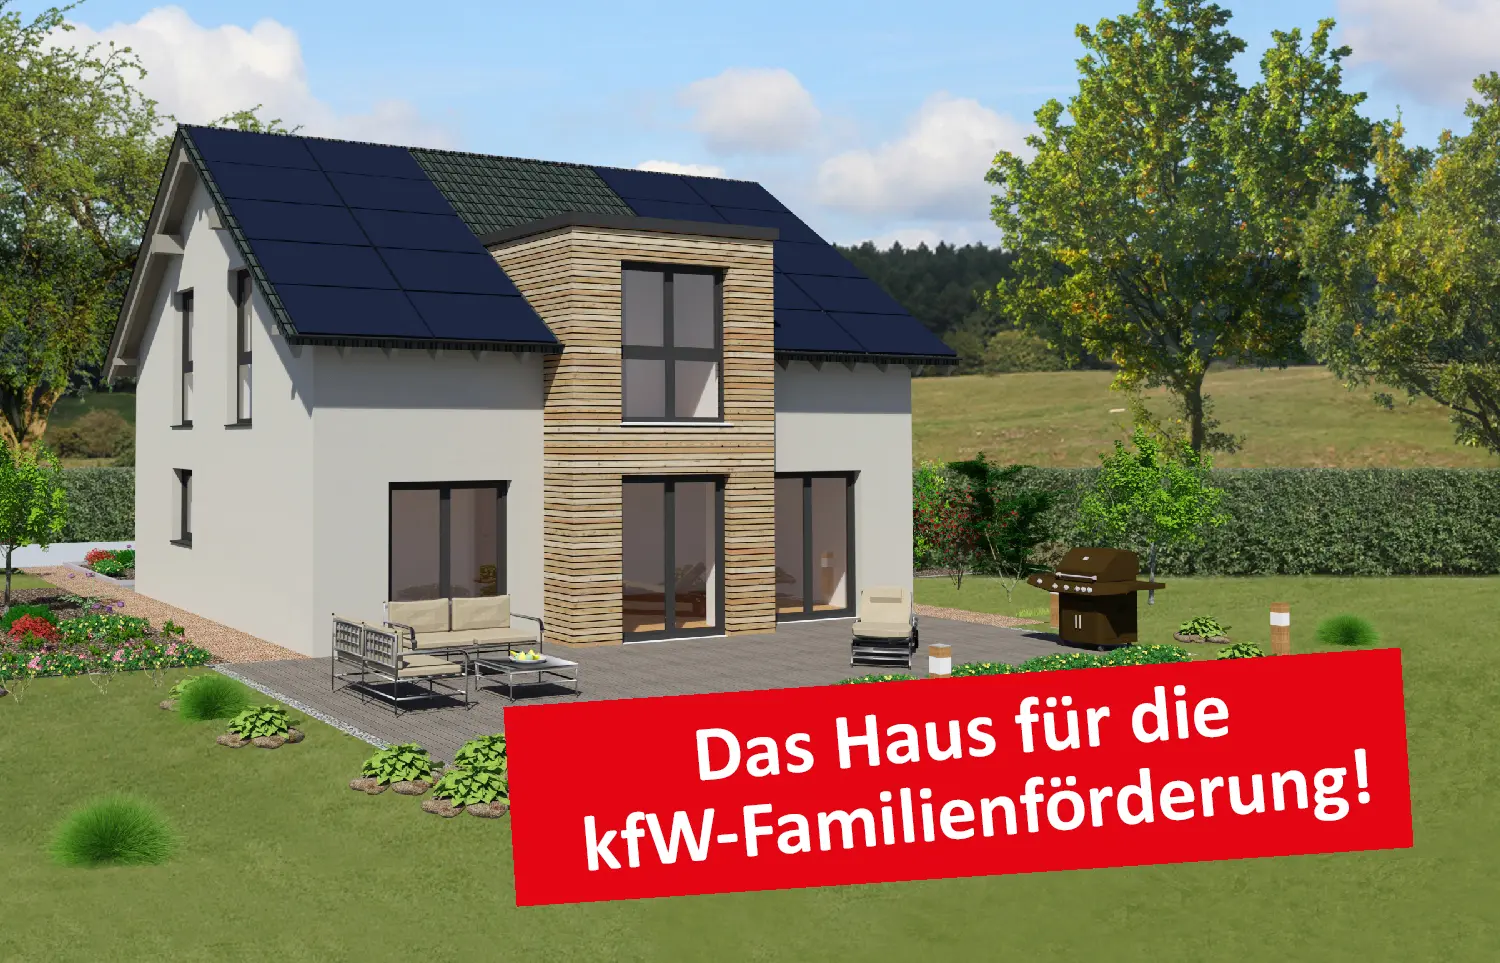 Attraktive Wohnen GmbH modernes Einfamilienhaus